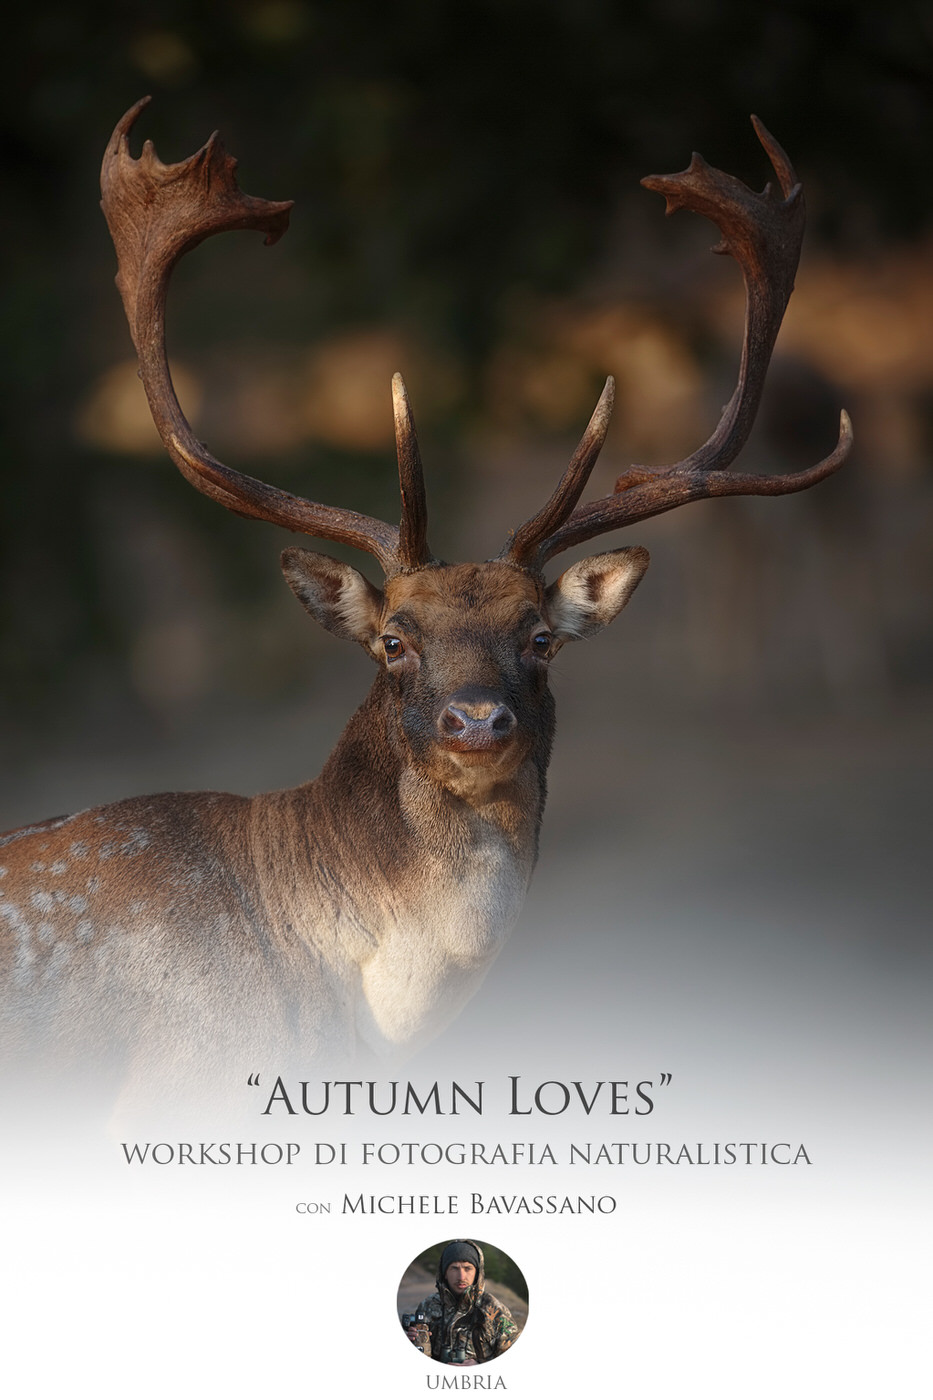 autumn loves - workshop di fotografia naturalistica durante la stagione degli amori del daino